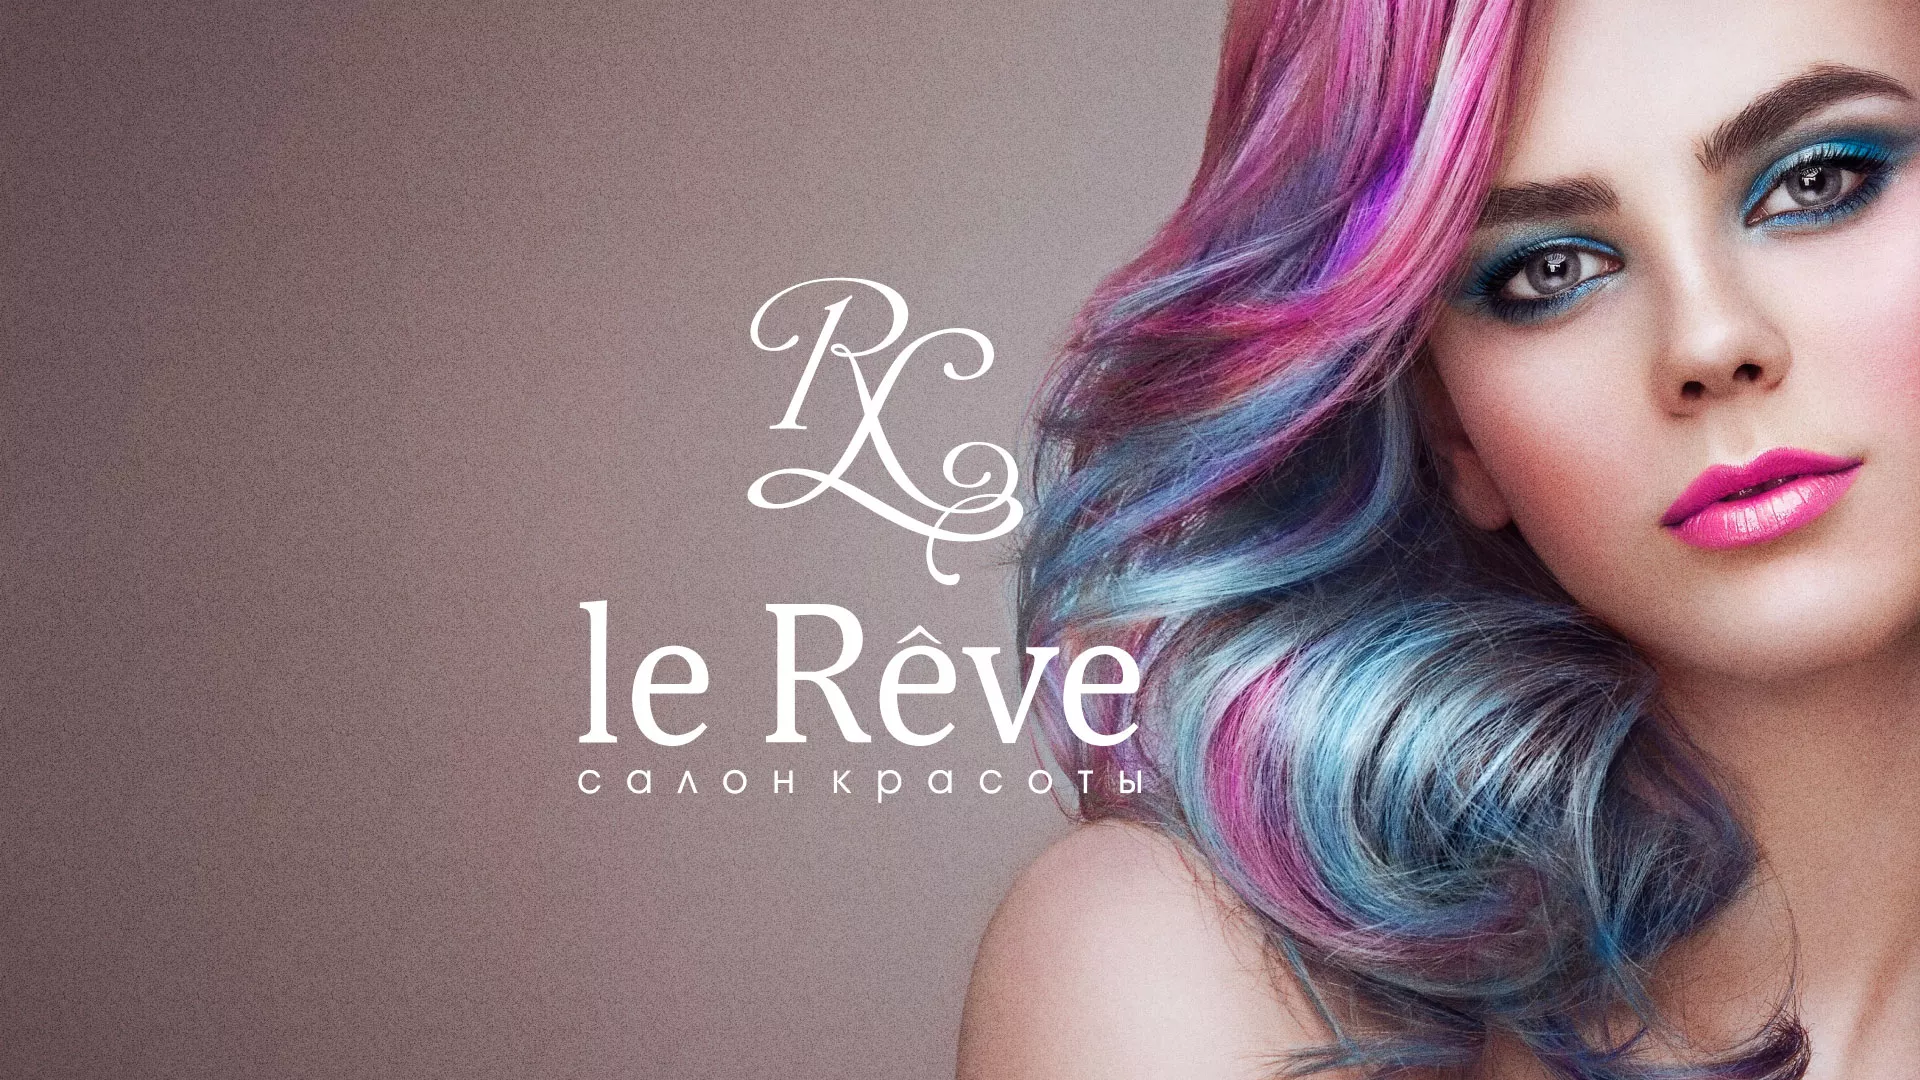 Создание сайта для салона красоты «Le Reve» в Анадыре